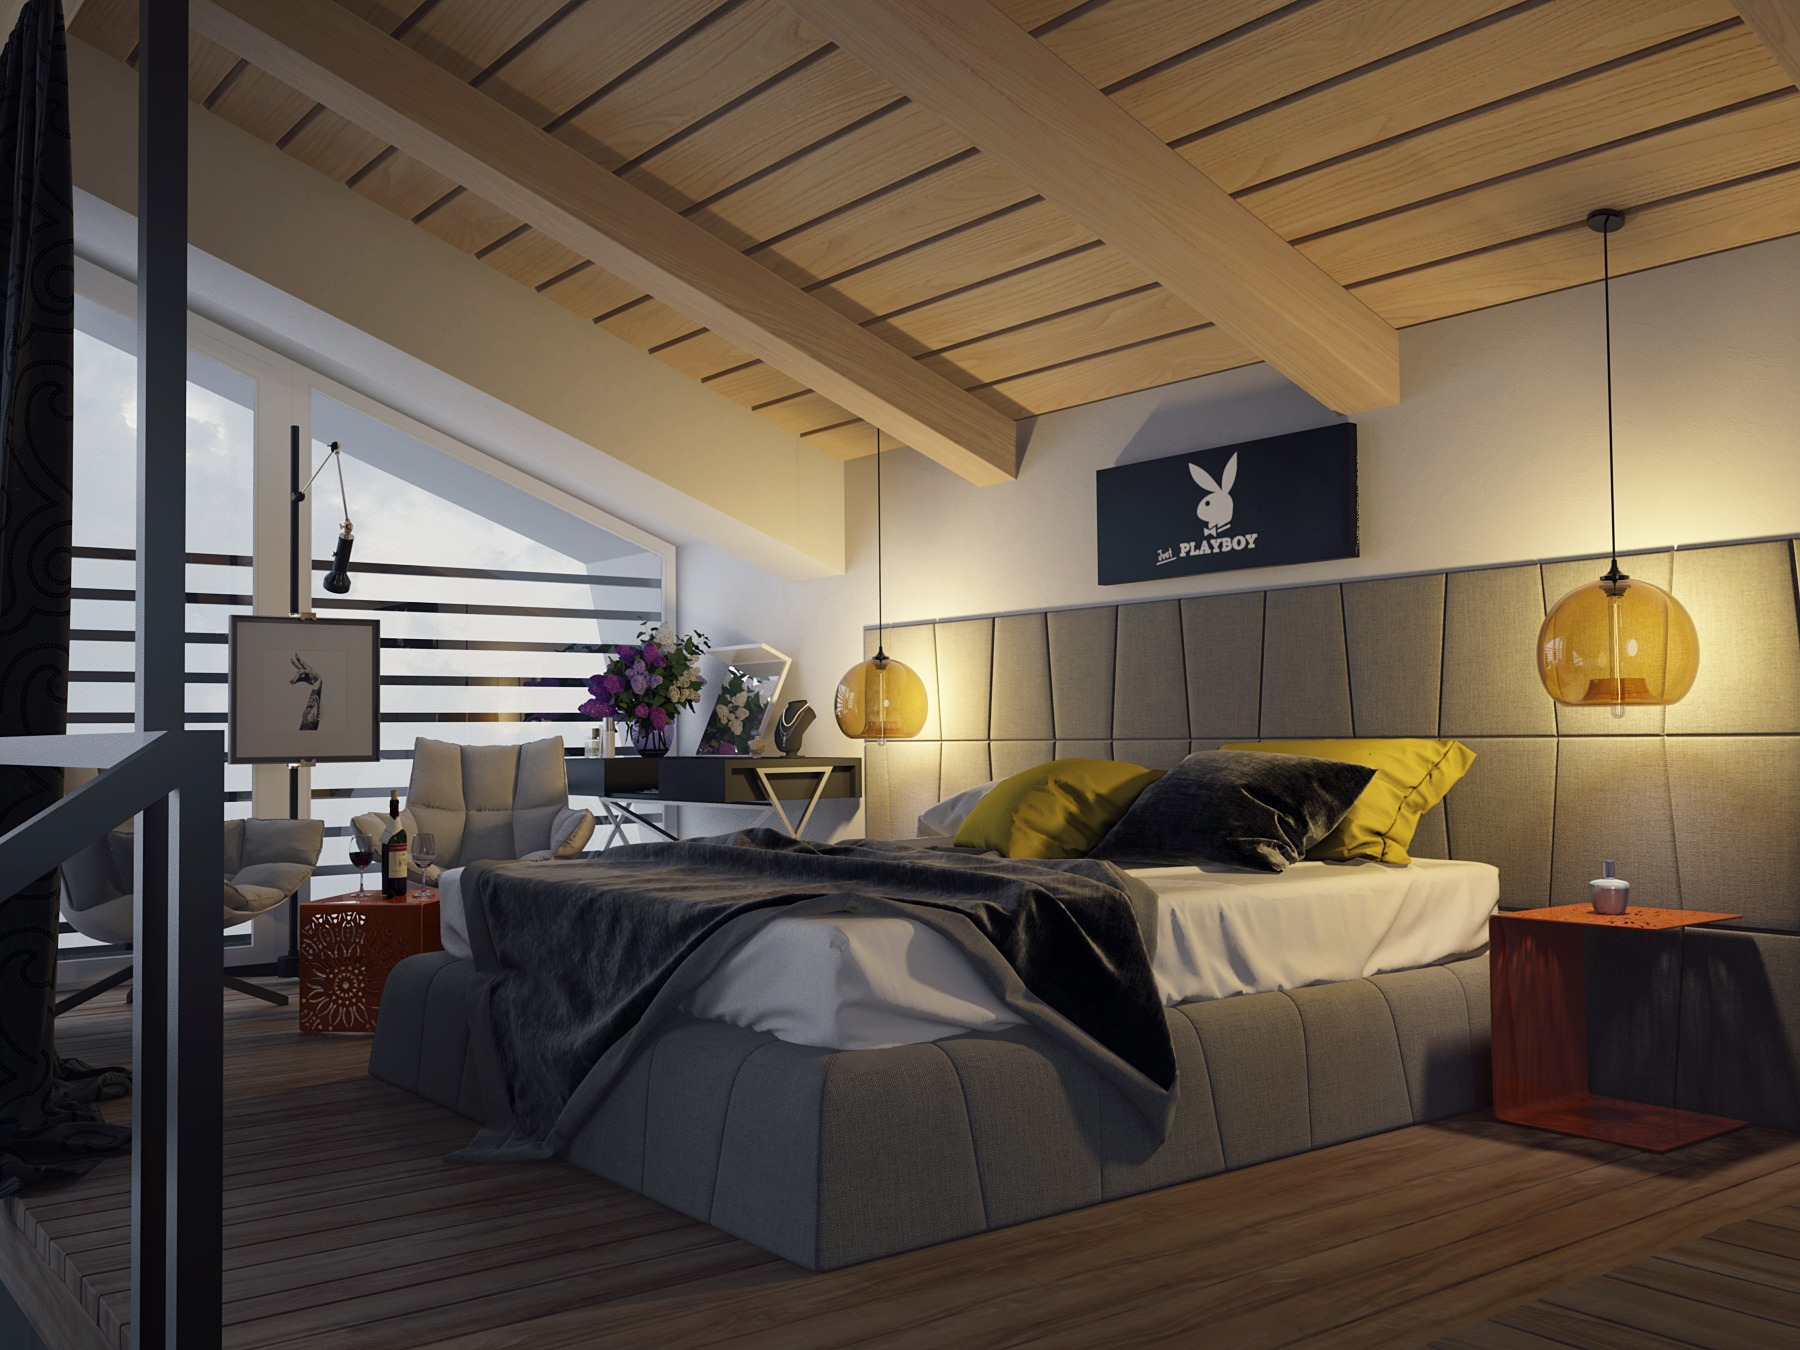 Master bedroom design ideas